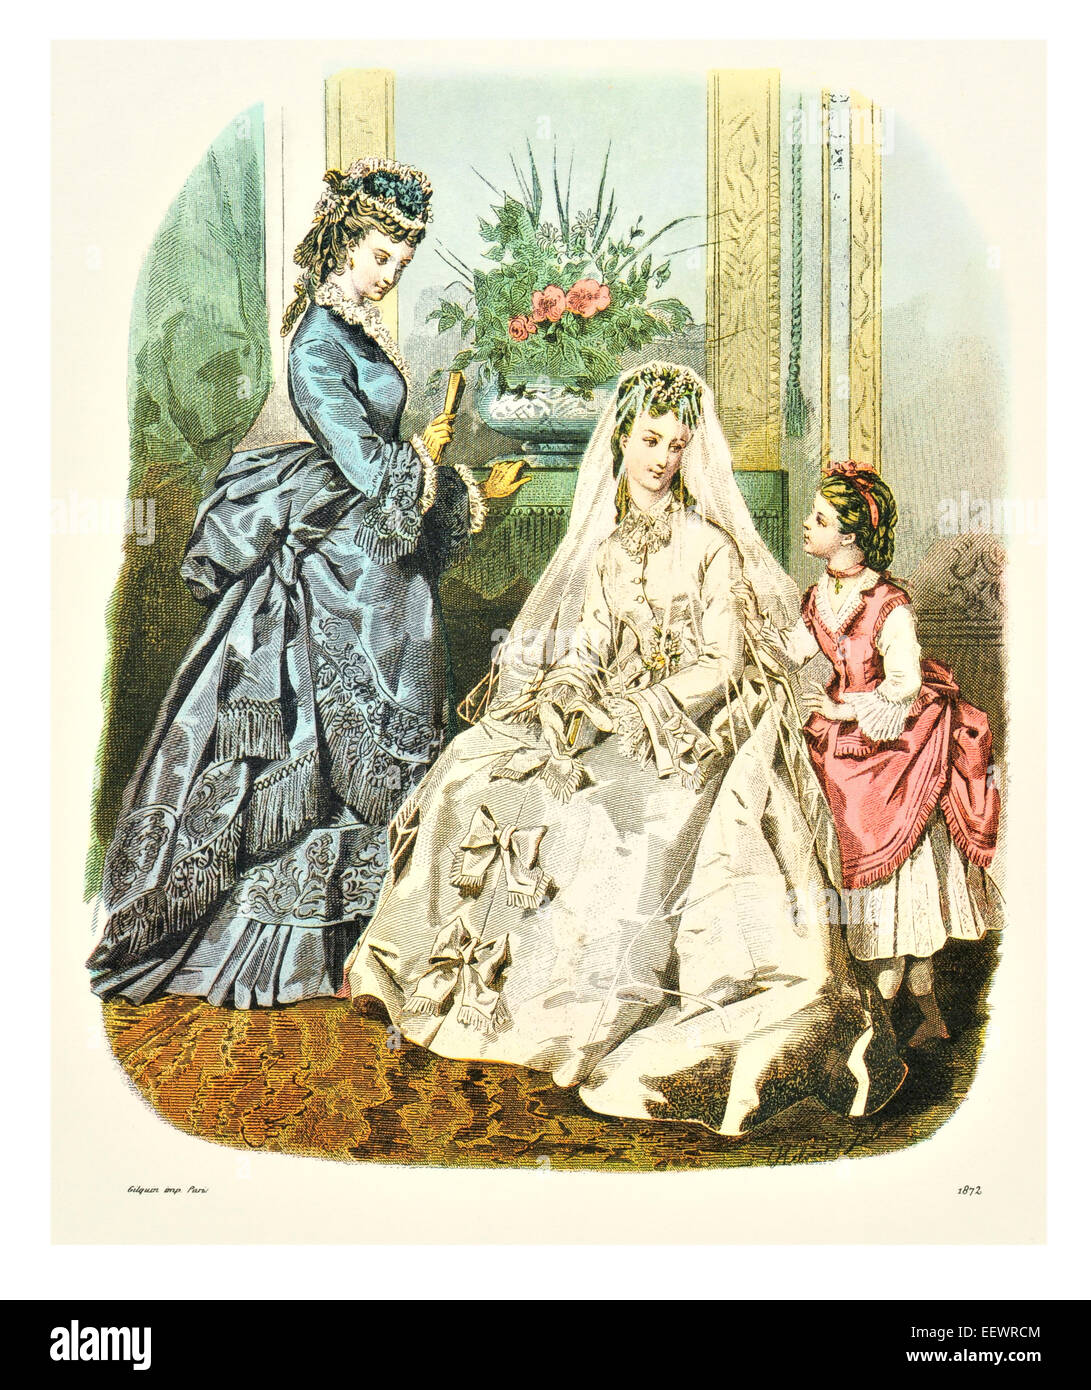 La Mode Illustree 1872 trajes de época victoriana moda vestido vestidos vestido falda velo cuff adornos vestido de boda Foto de stock